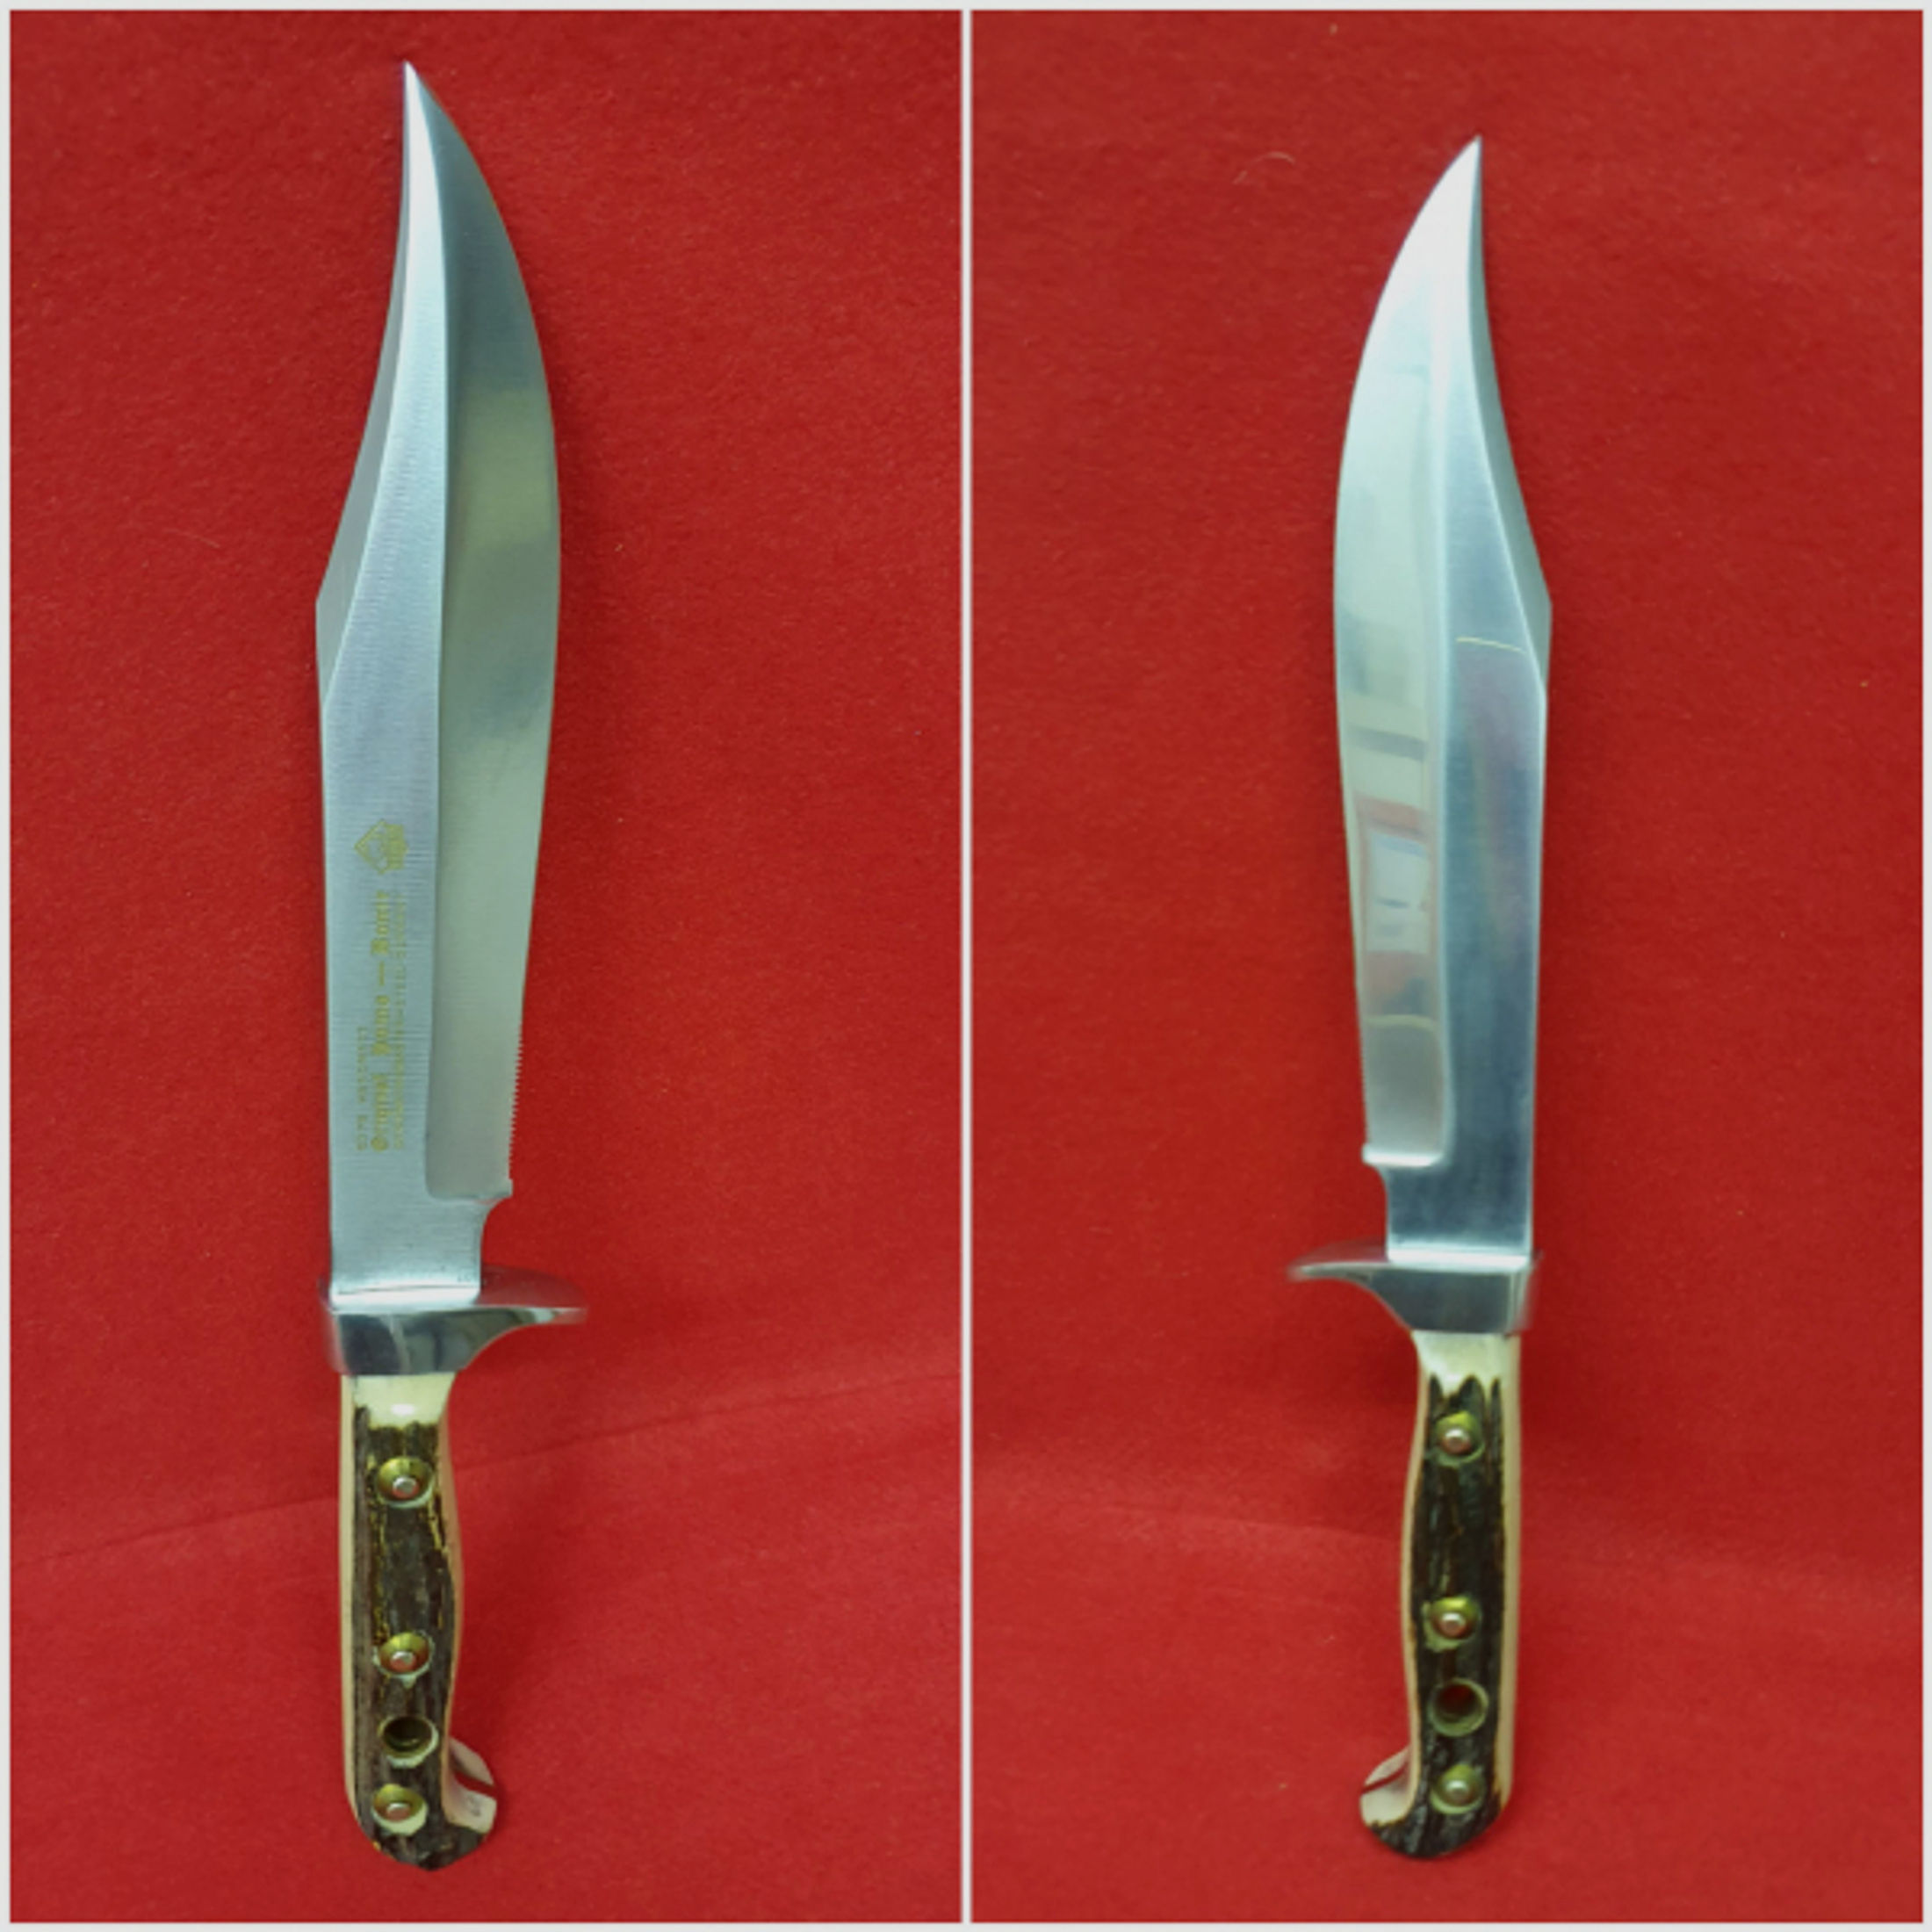 Original - Puma  Bowie Messer Handmade / Handgemacht No. 6376